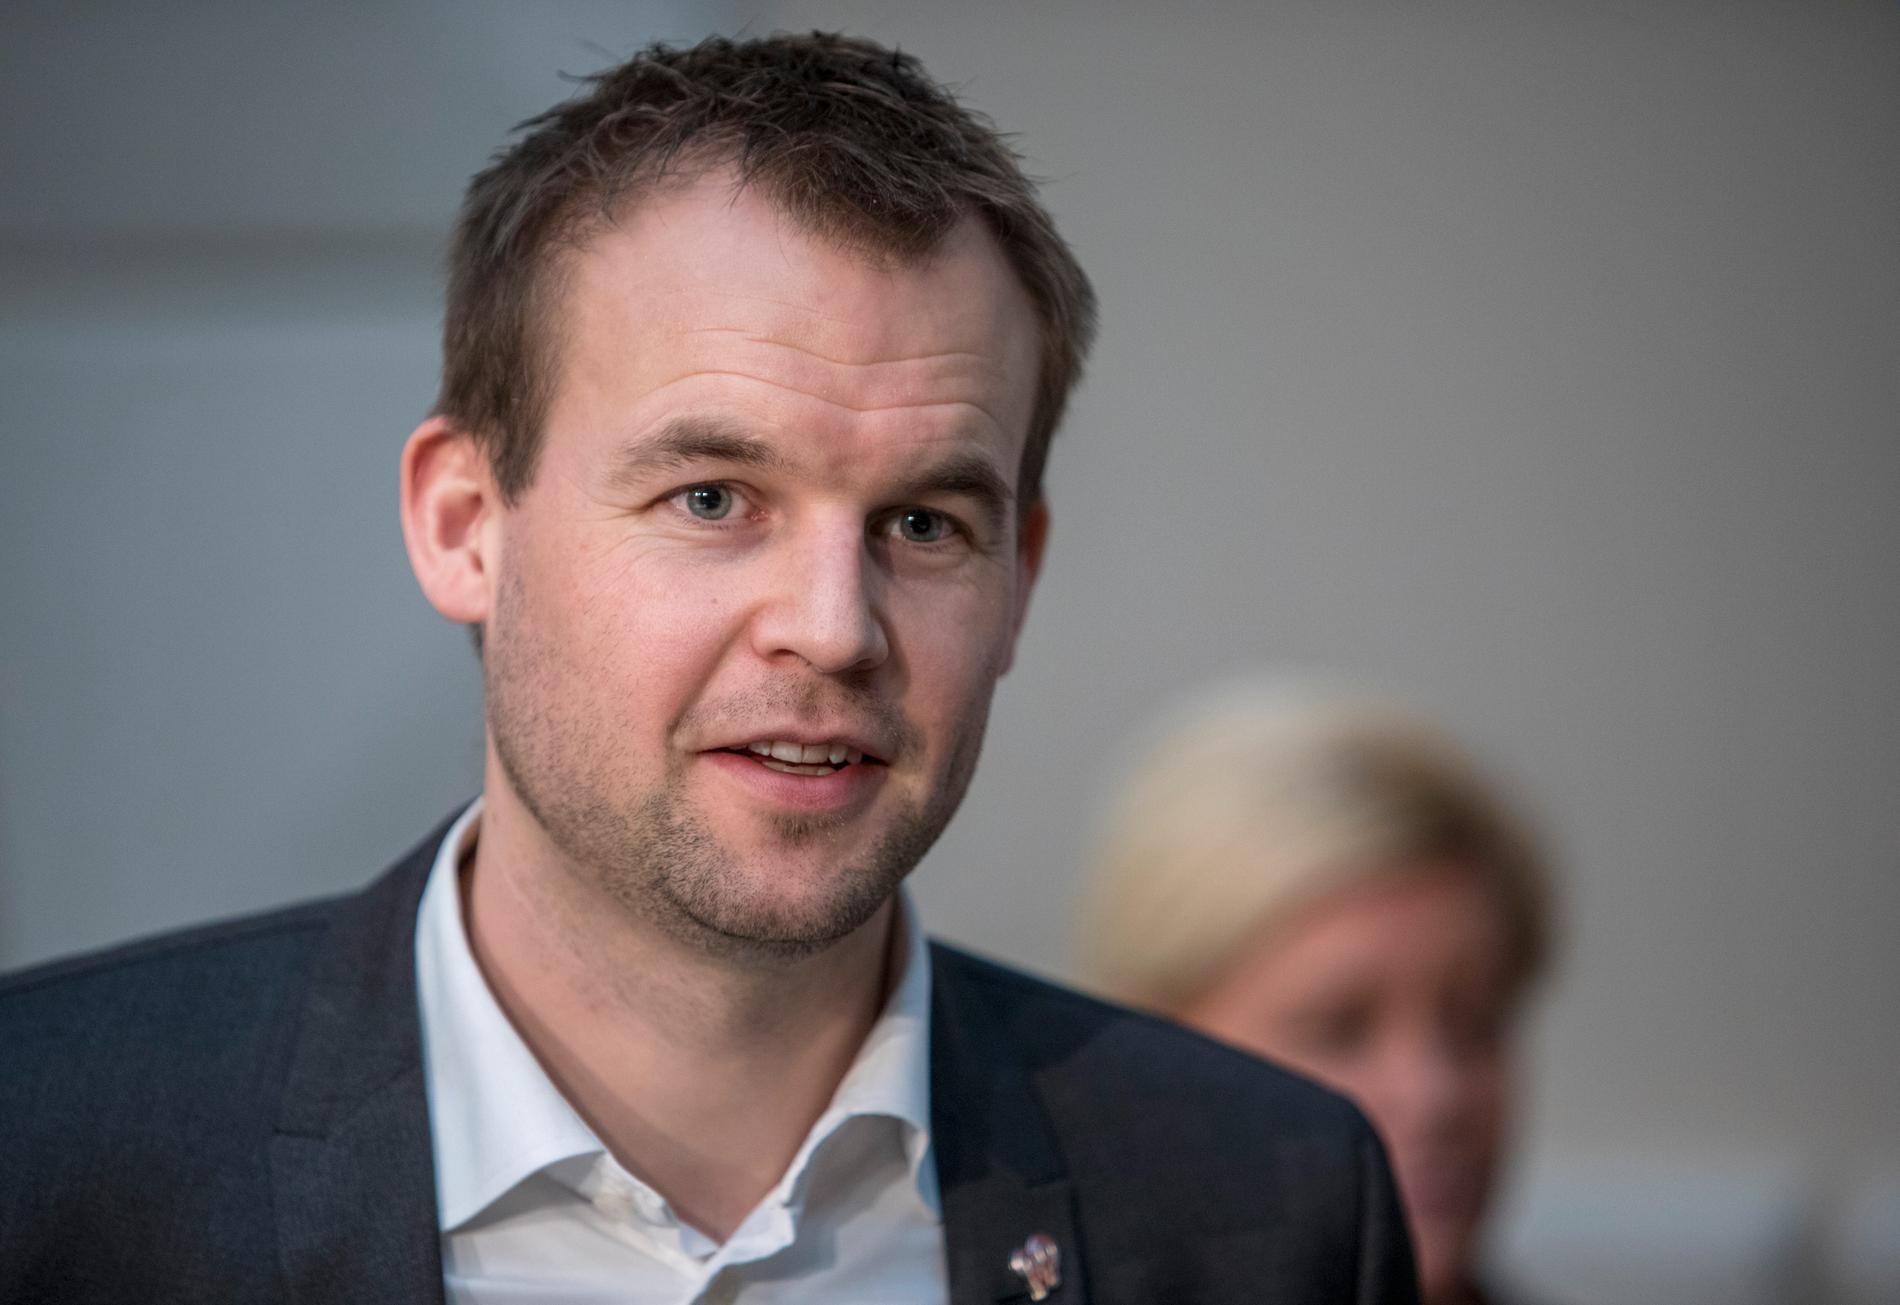 TAR SNART OVER: Barne- og familieminister Kjell Ingolf Ropstad (KrF) har nå blitt spurt om å bli ny partileder i KrF.